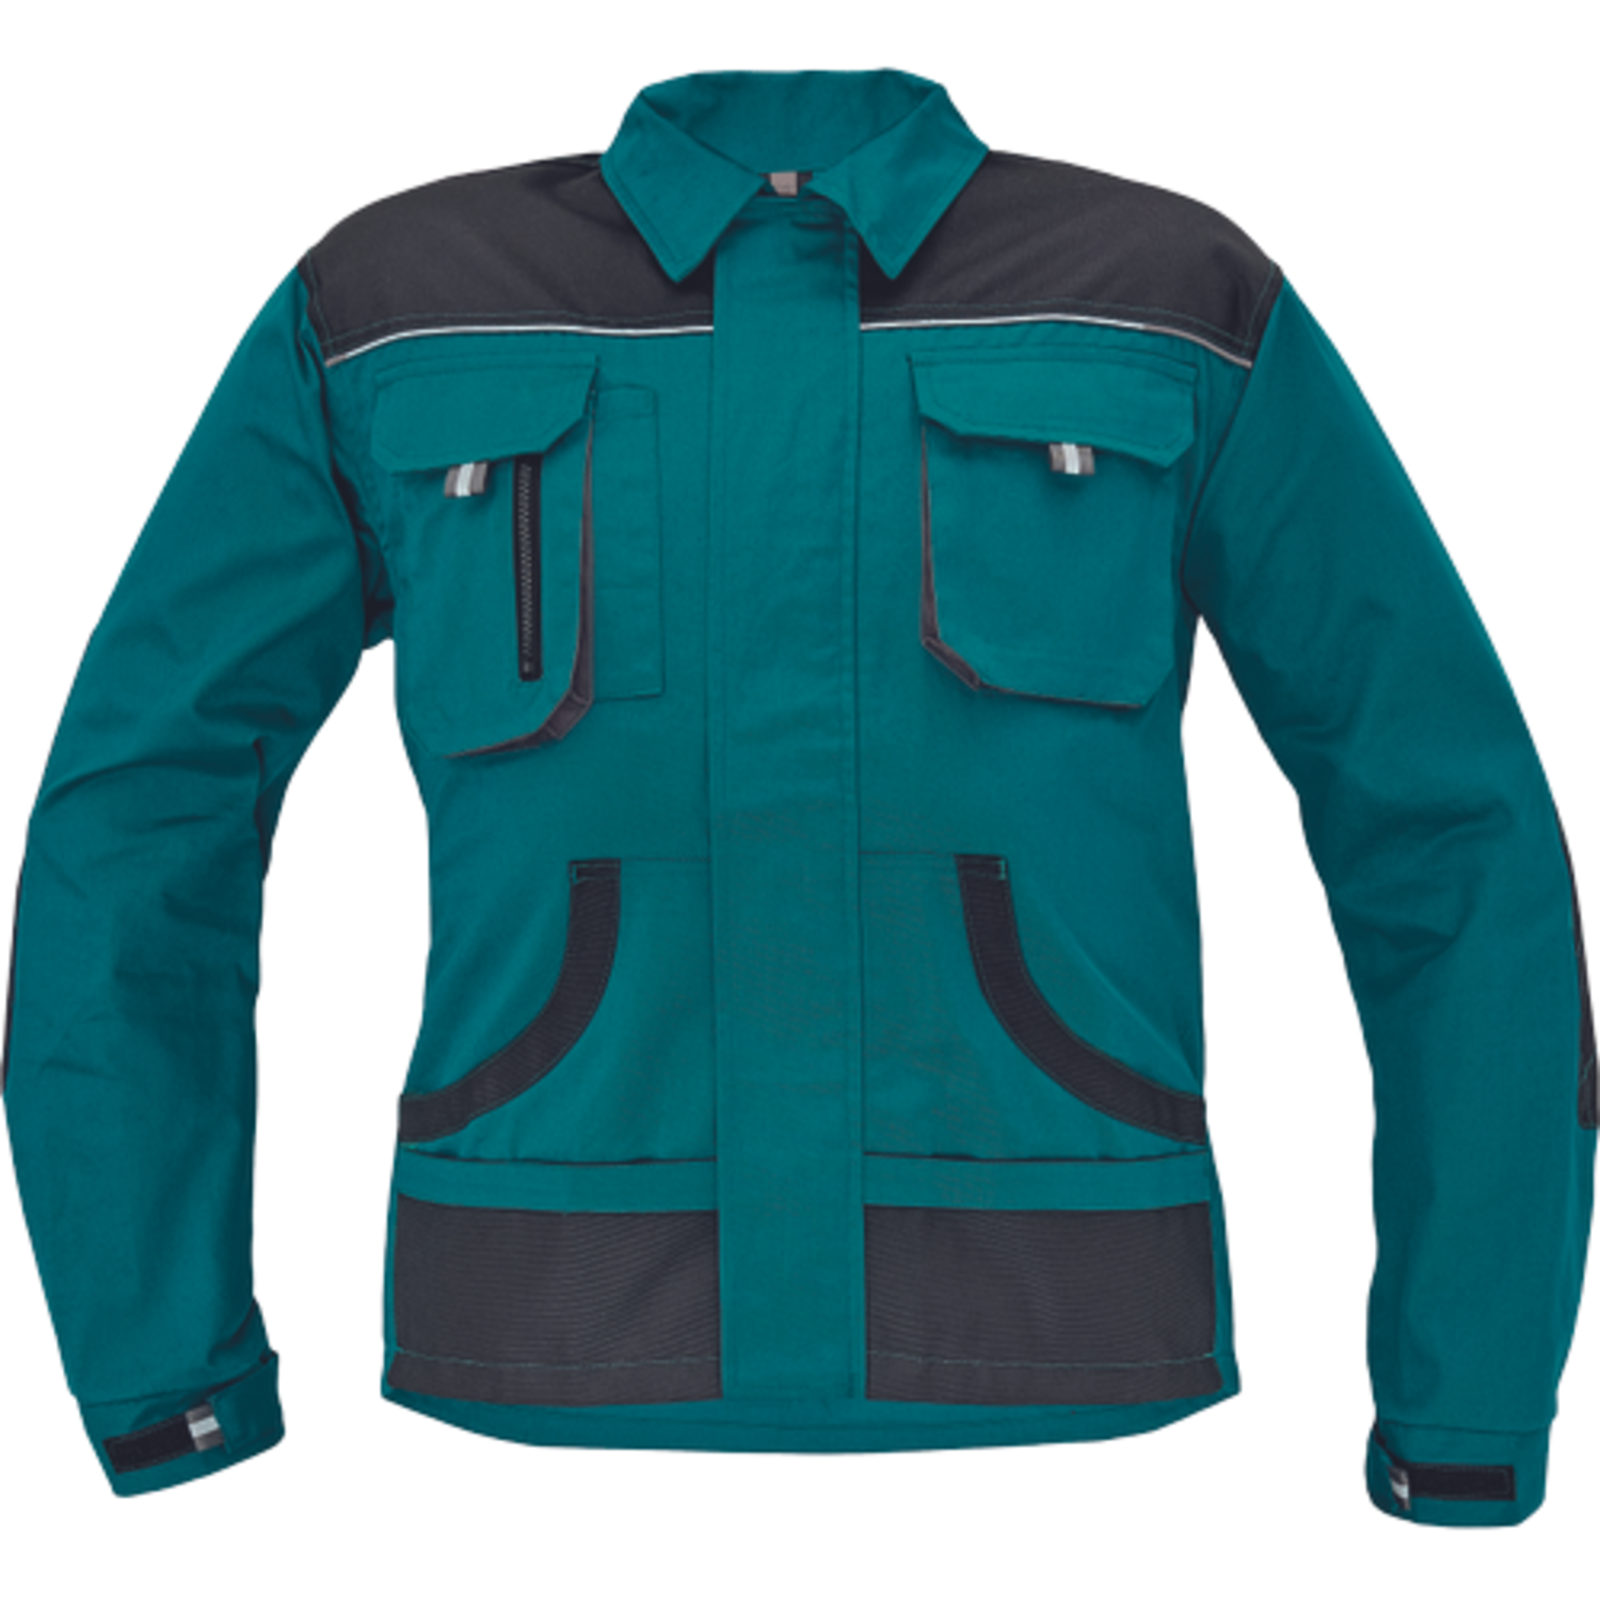 Odolná pracovná bunda Cerva FF Hans - veľkosť: 52, farba: zelená/antracit